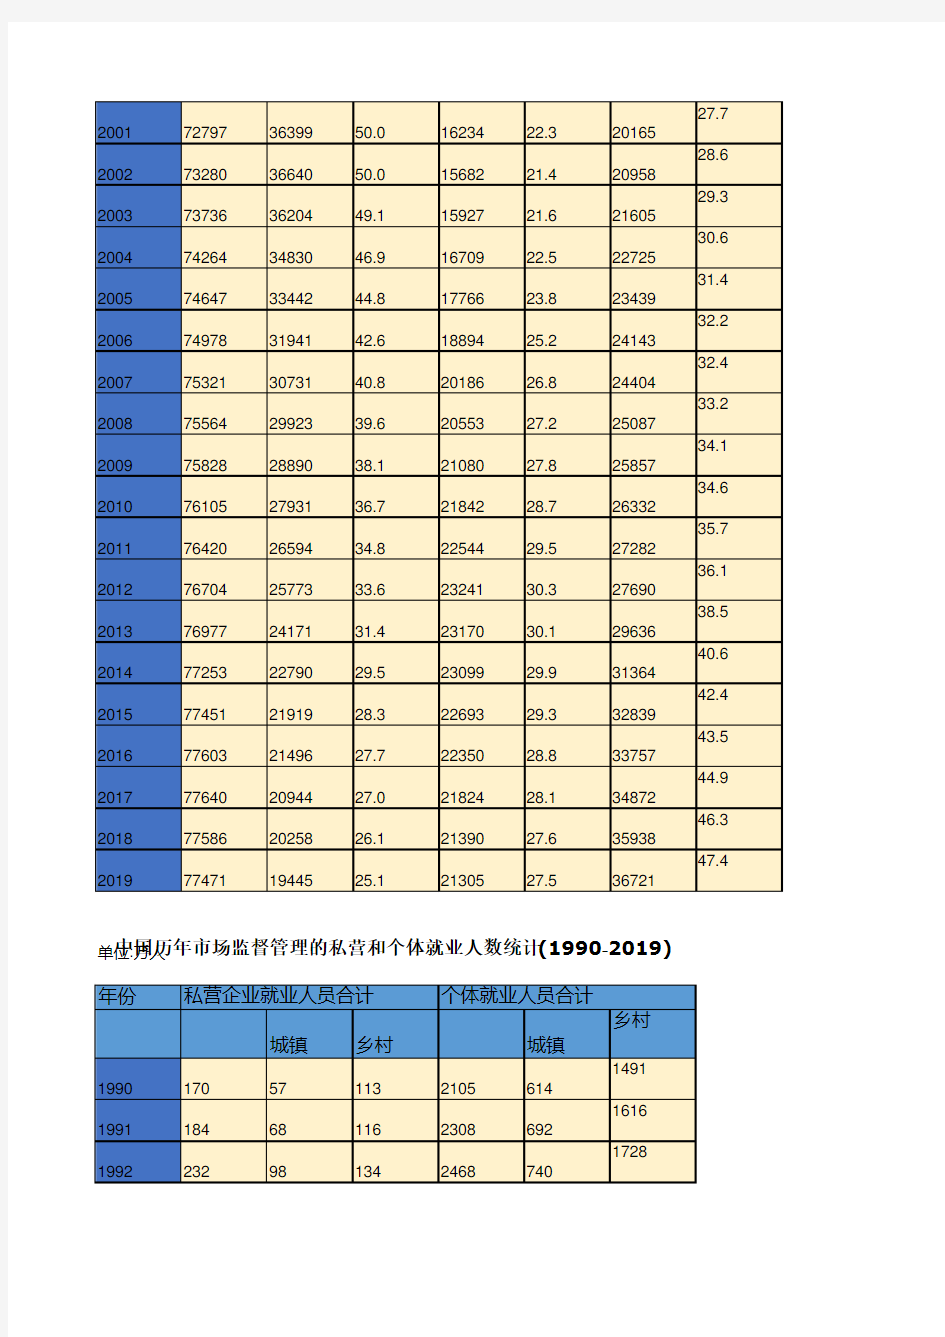 中国历年分三次产业就业人数及构成统计(1978-2019)